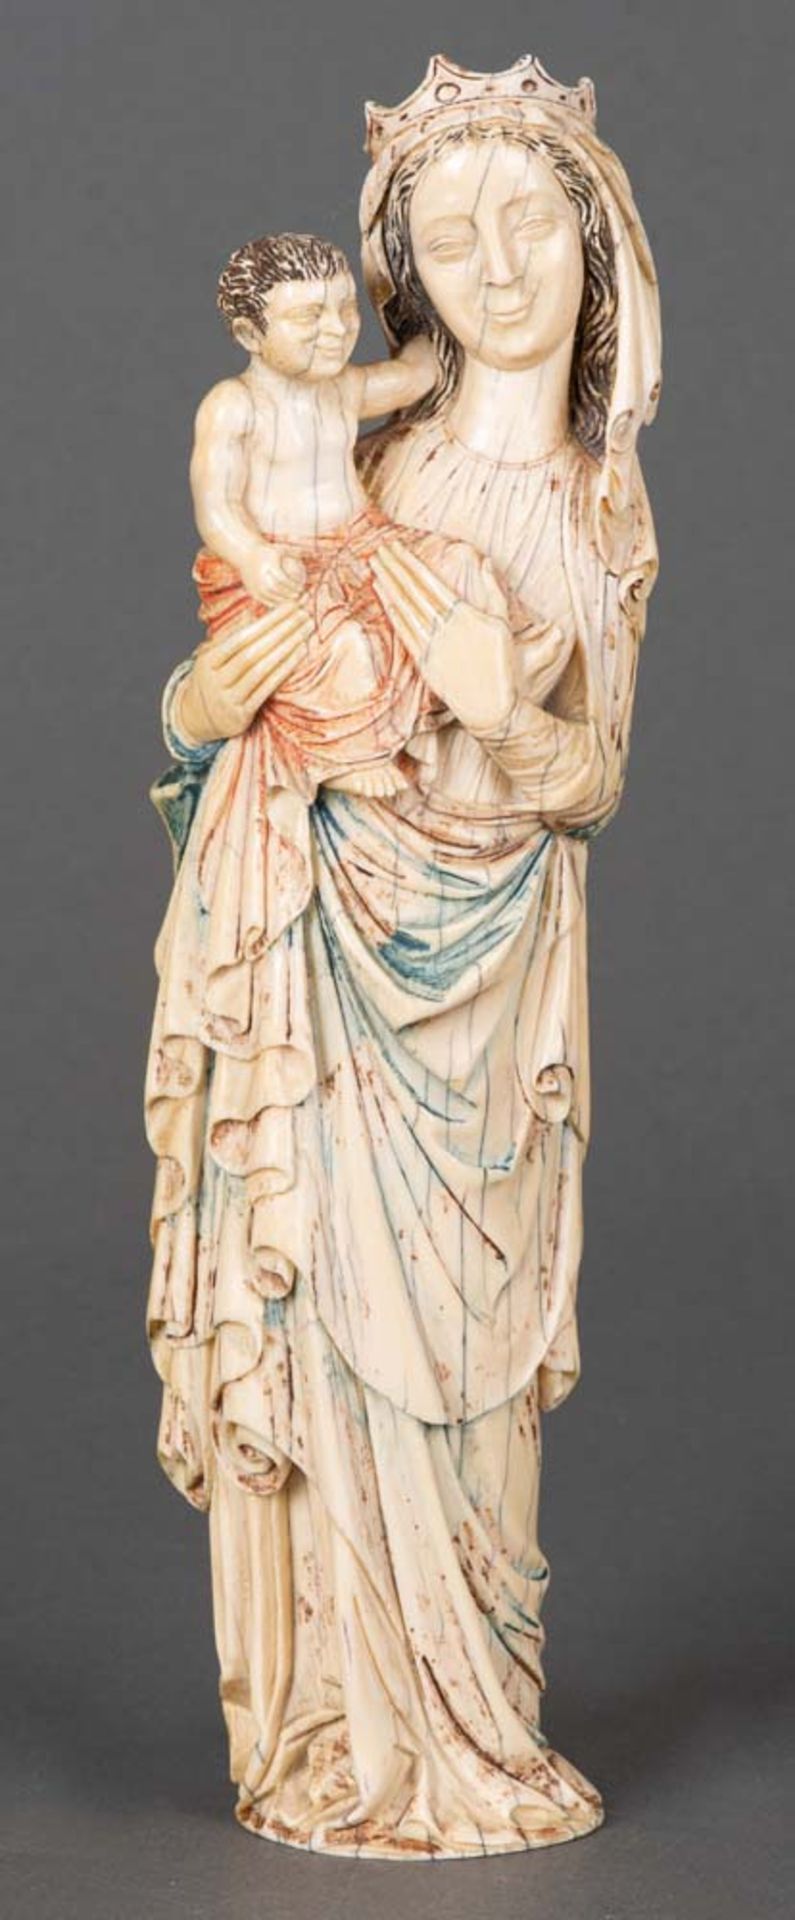 Muttergottes mit Kind. Wohl Pariser Meister des 14. Jhs. Die vollplastisch geschnitzte Madonna mit - Bild 6 aus 6